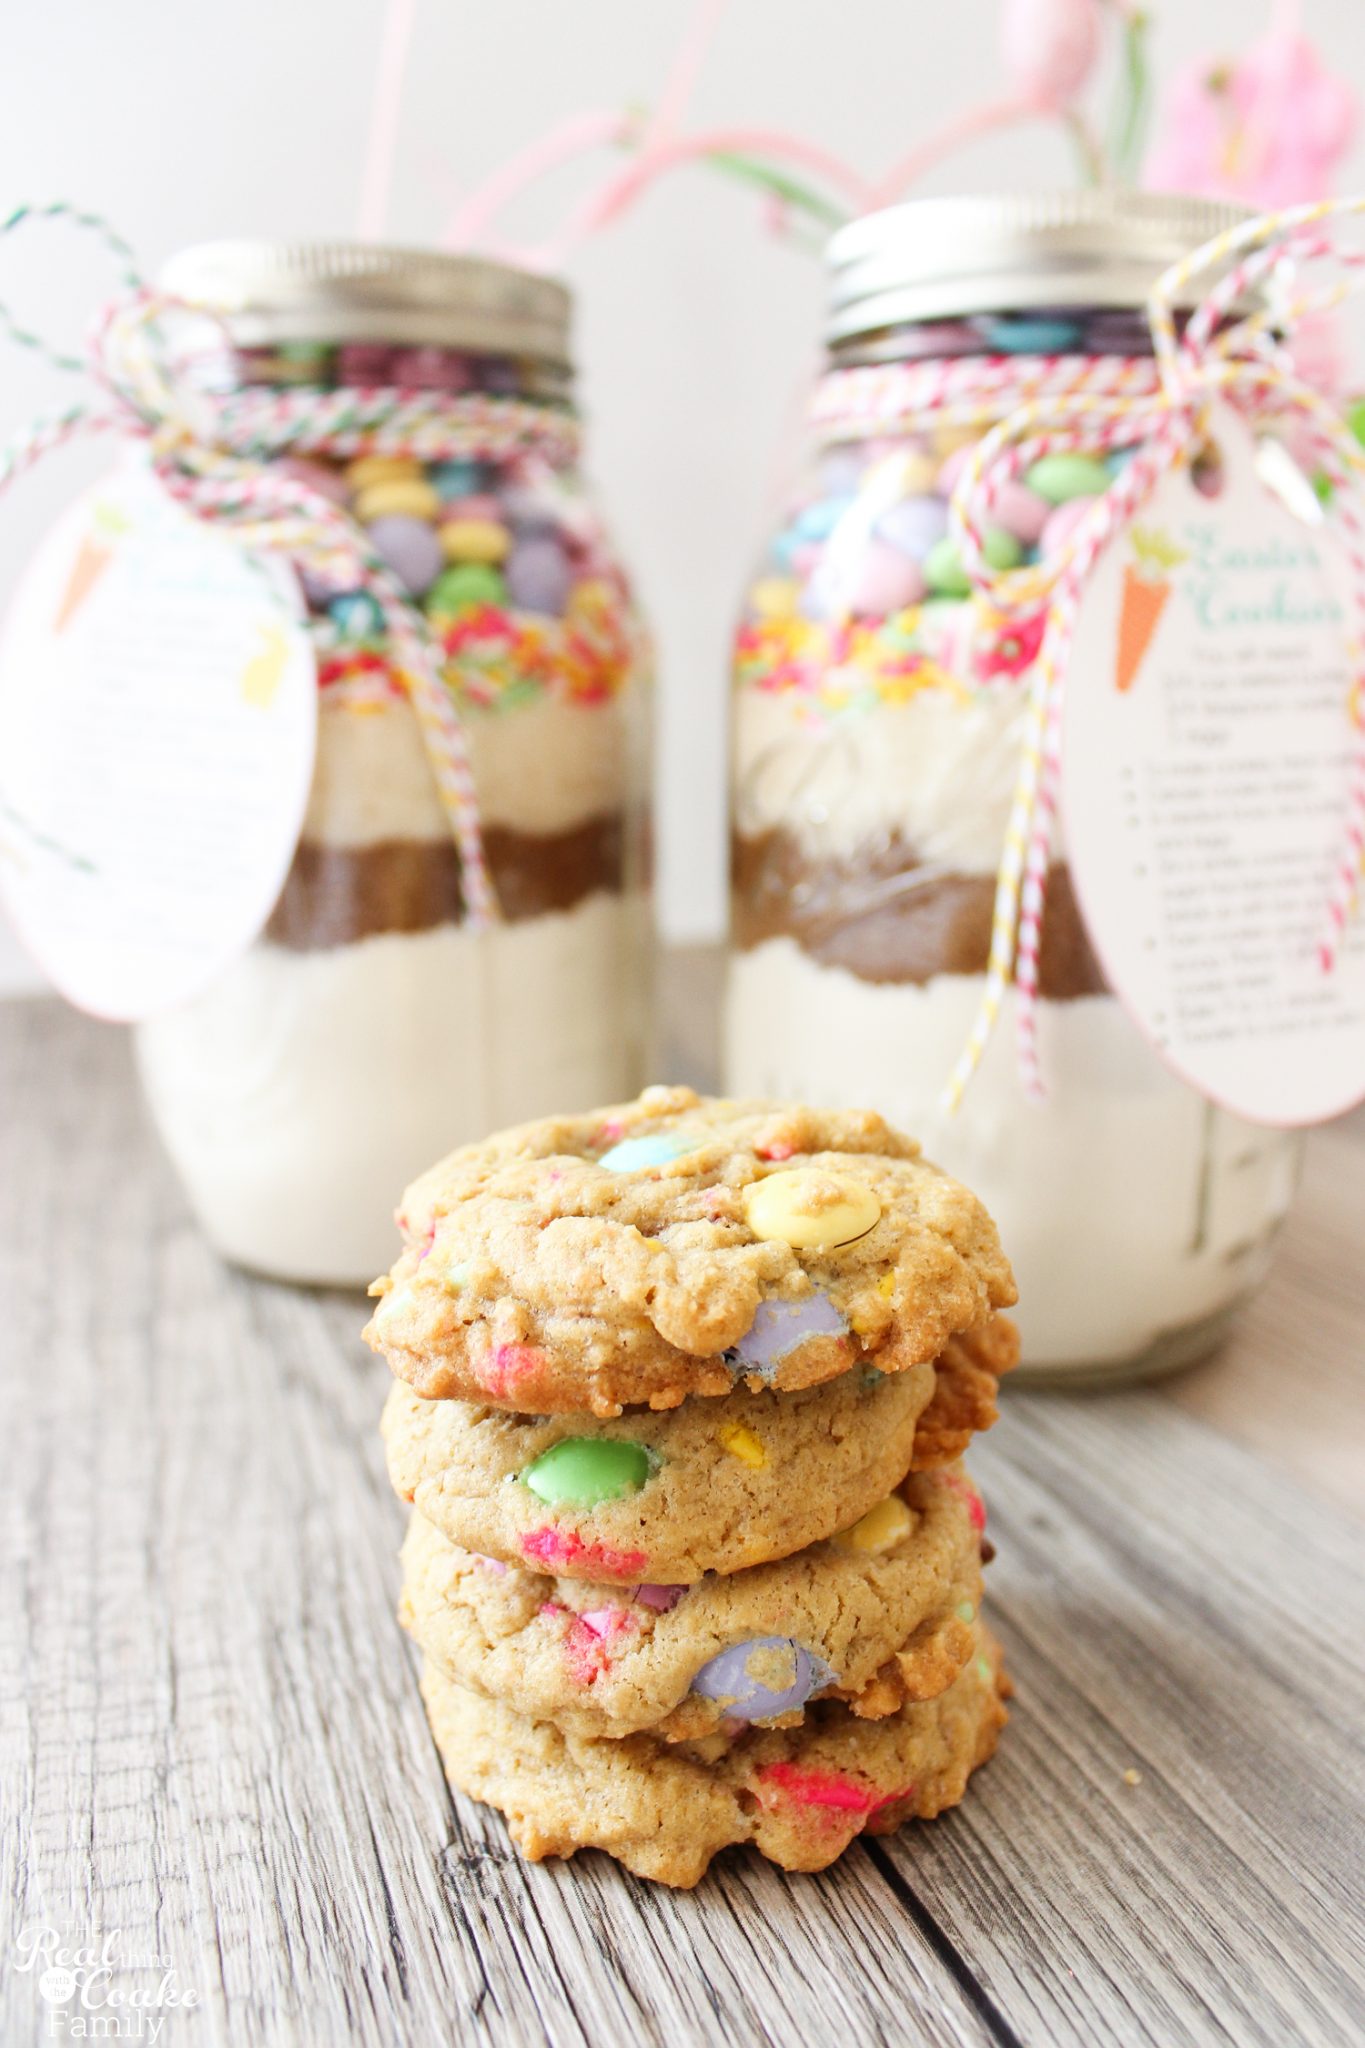 cookies in a jar